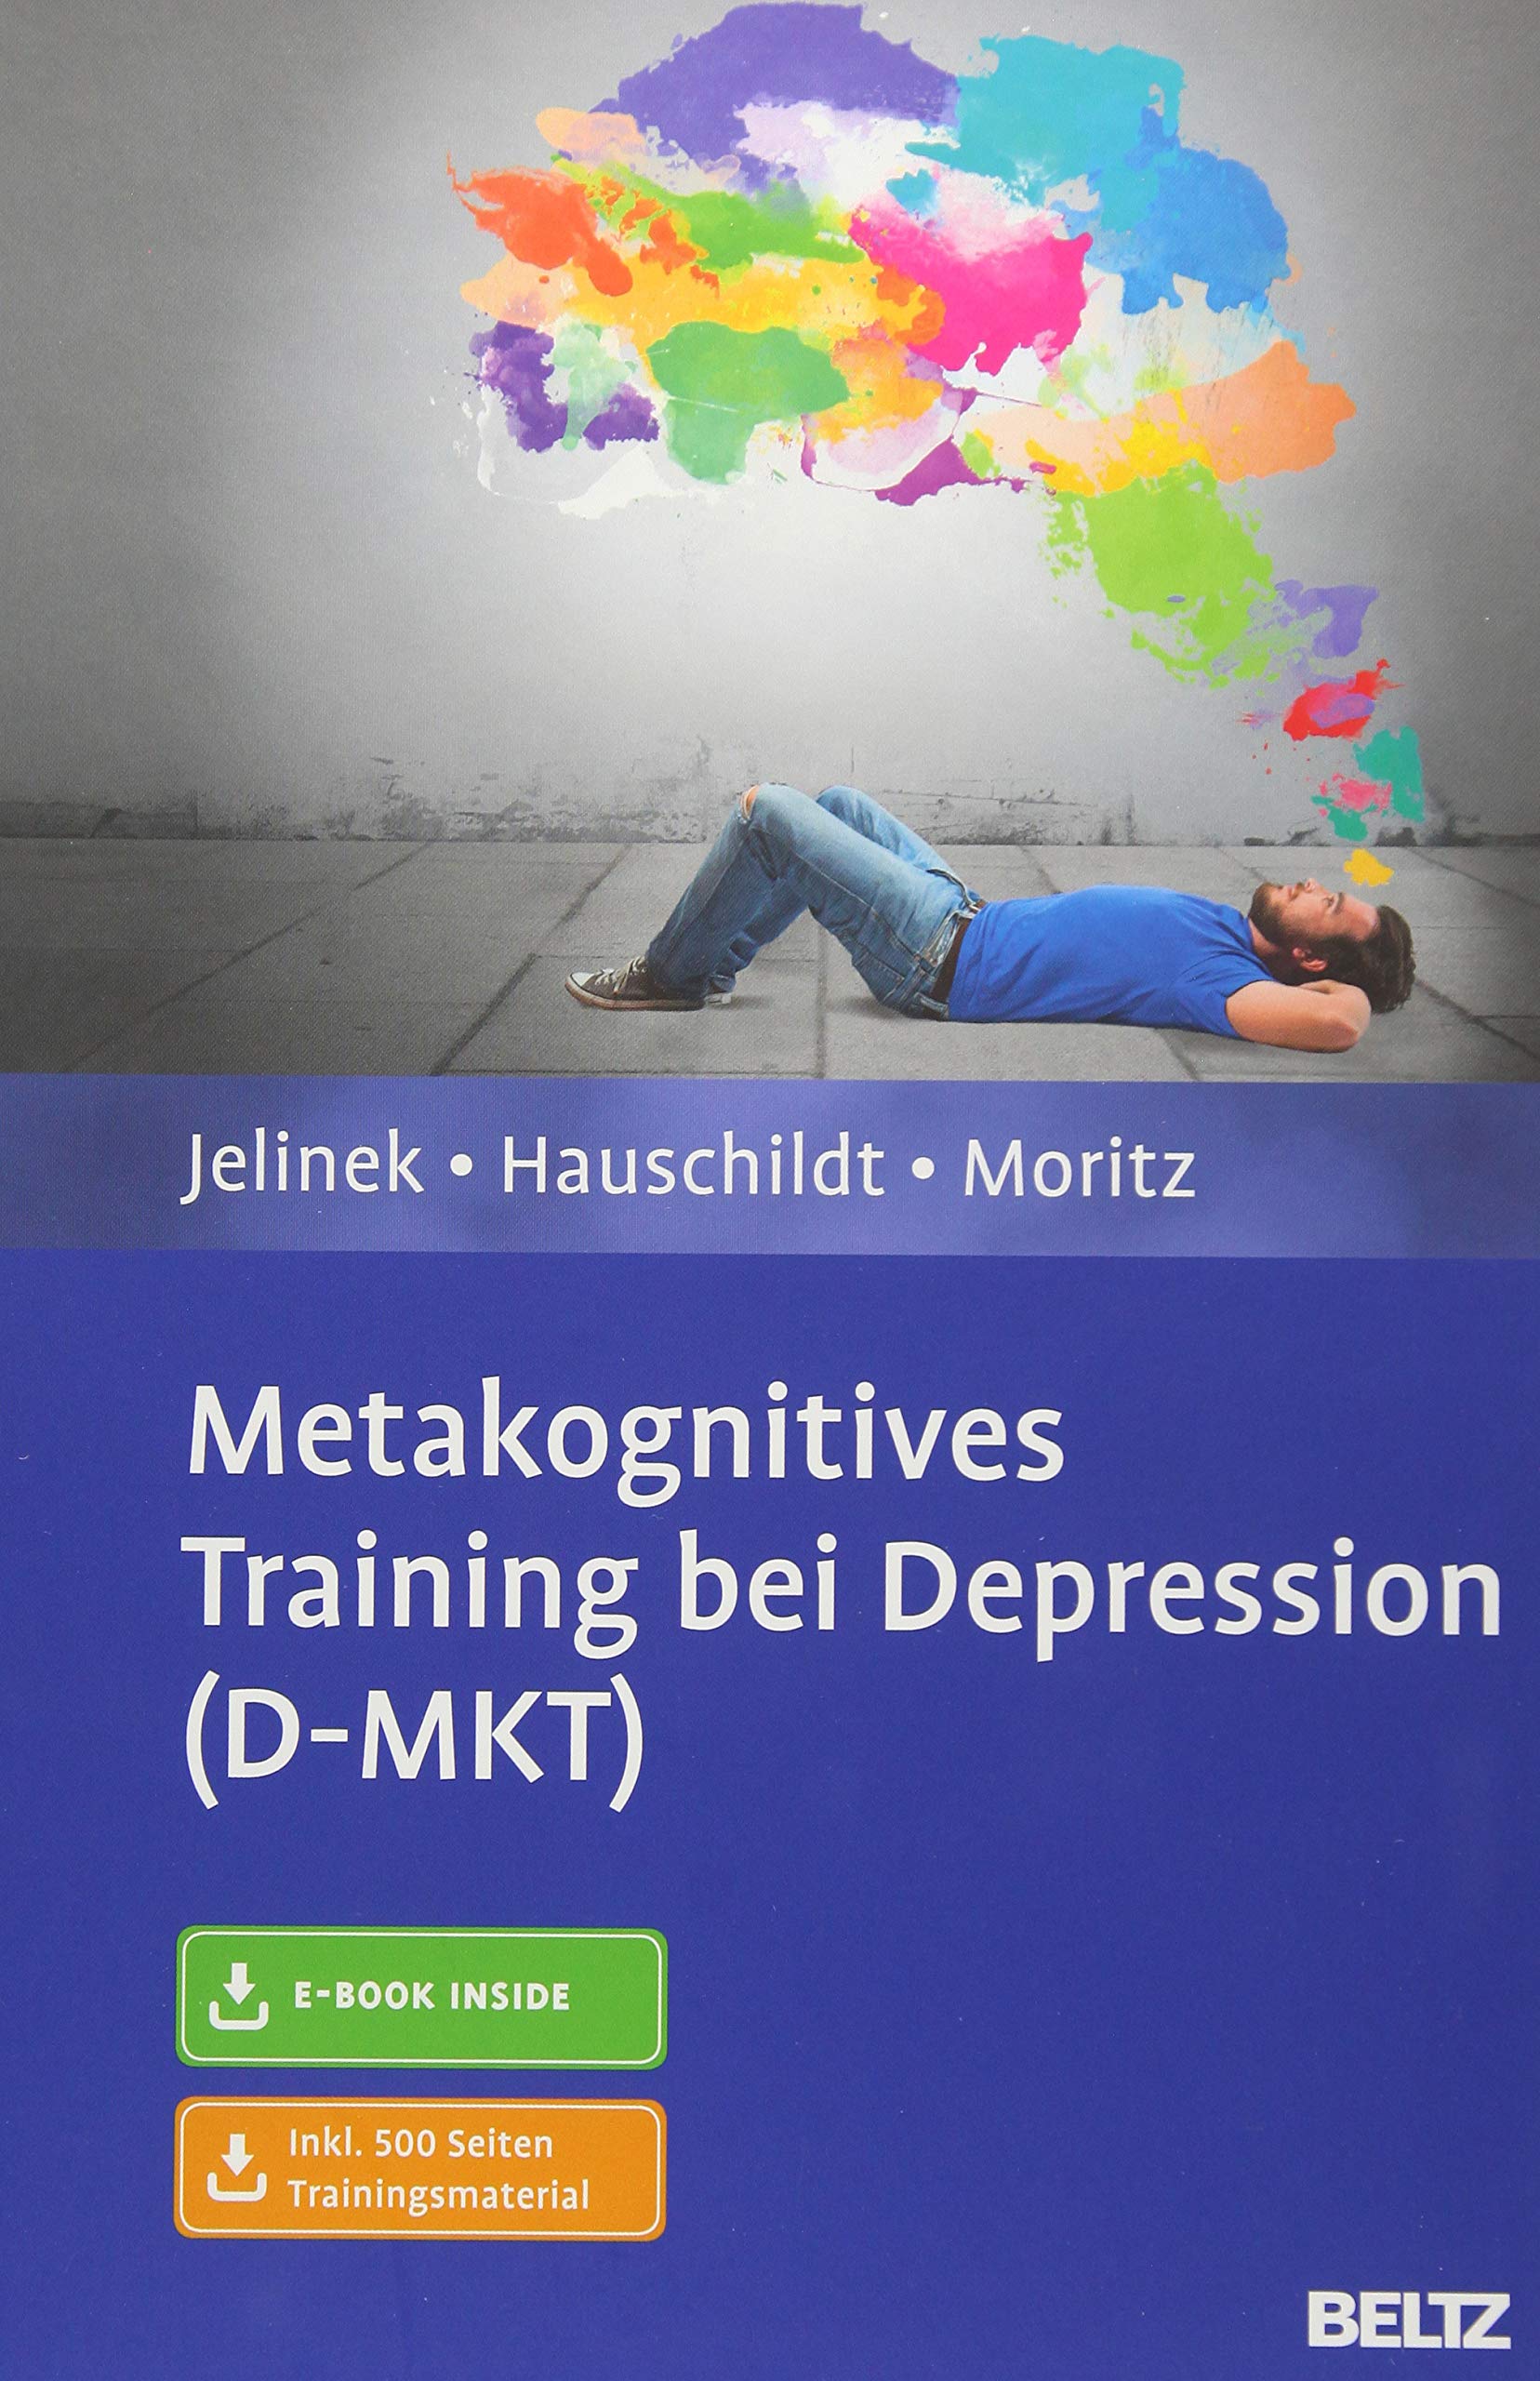 Buch: Metakognitives Training bei Depression (D-MKT) (Amazon)